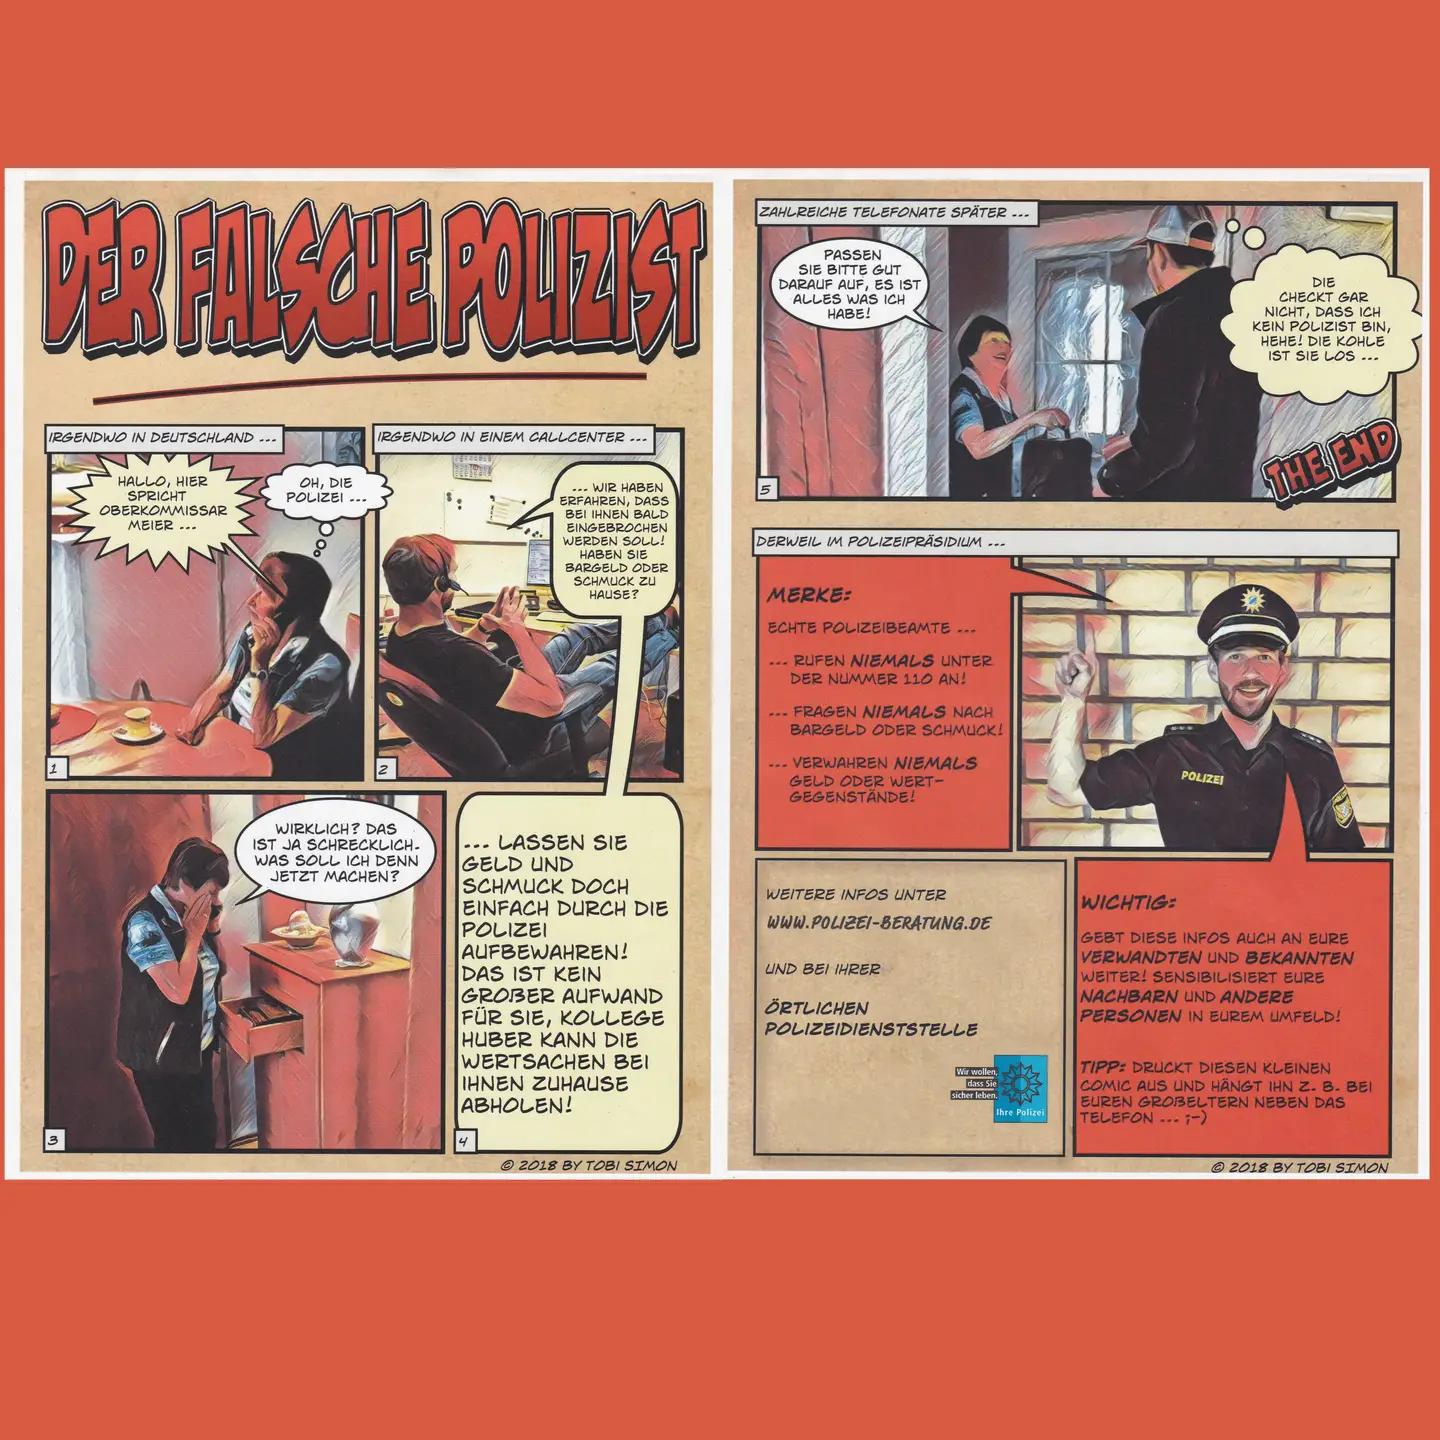 Plakat im Comicformat, Falscher Polizist ergaunert am Telefon und mit Abholung Schmuck und Bargeld vom ahnngslosen Opfer